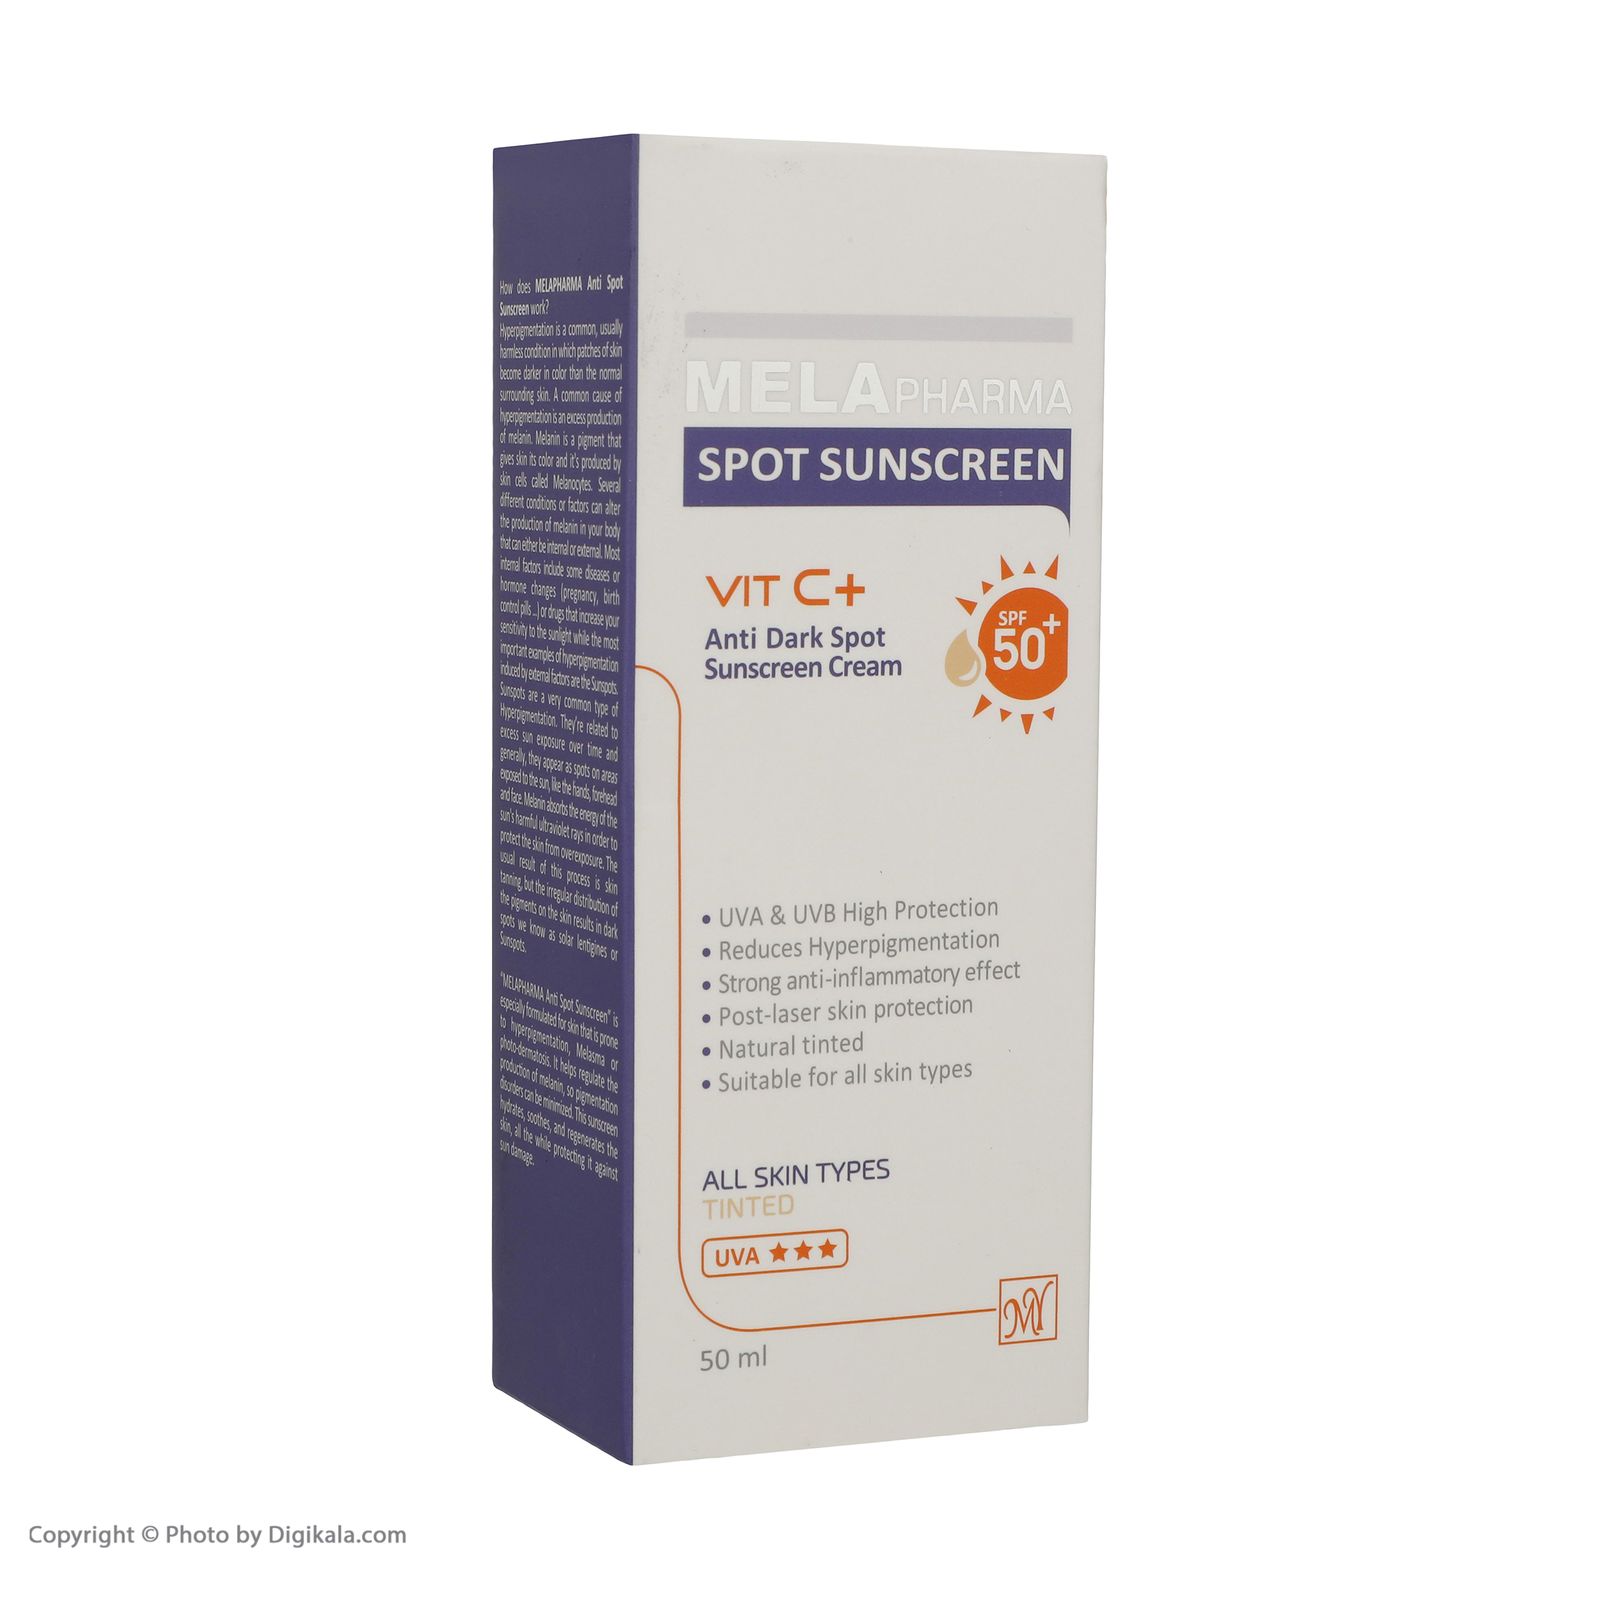 کرم ضد آفتاب و ضد لک مای سری ملافارما مدل vitamin c حجم 50 میلی لیتر -  - 3